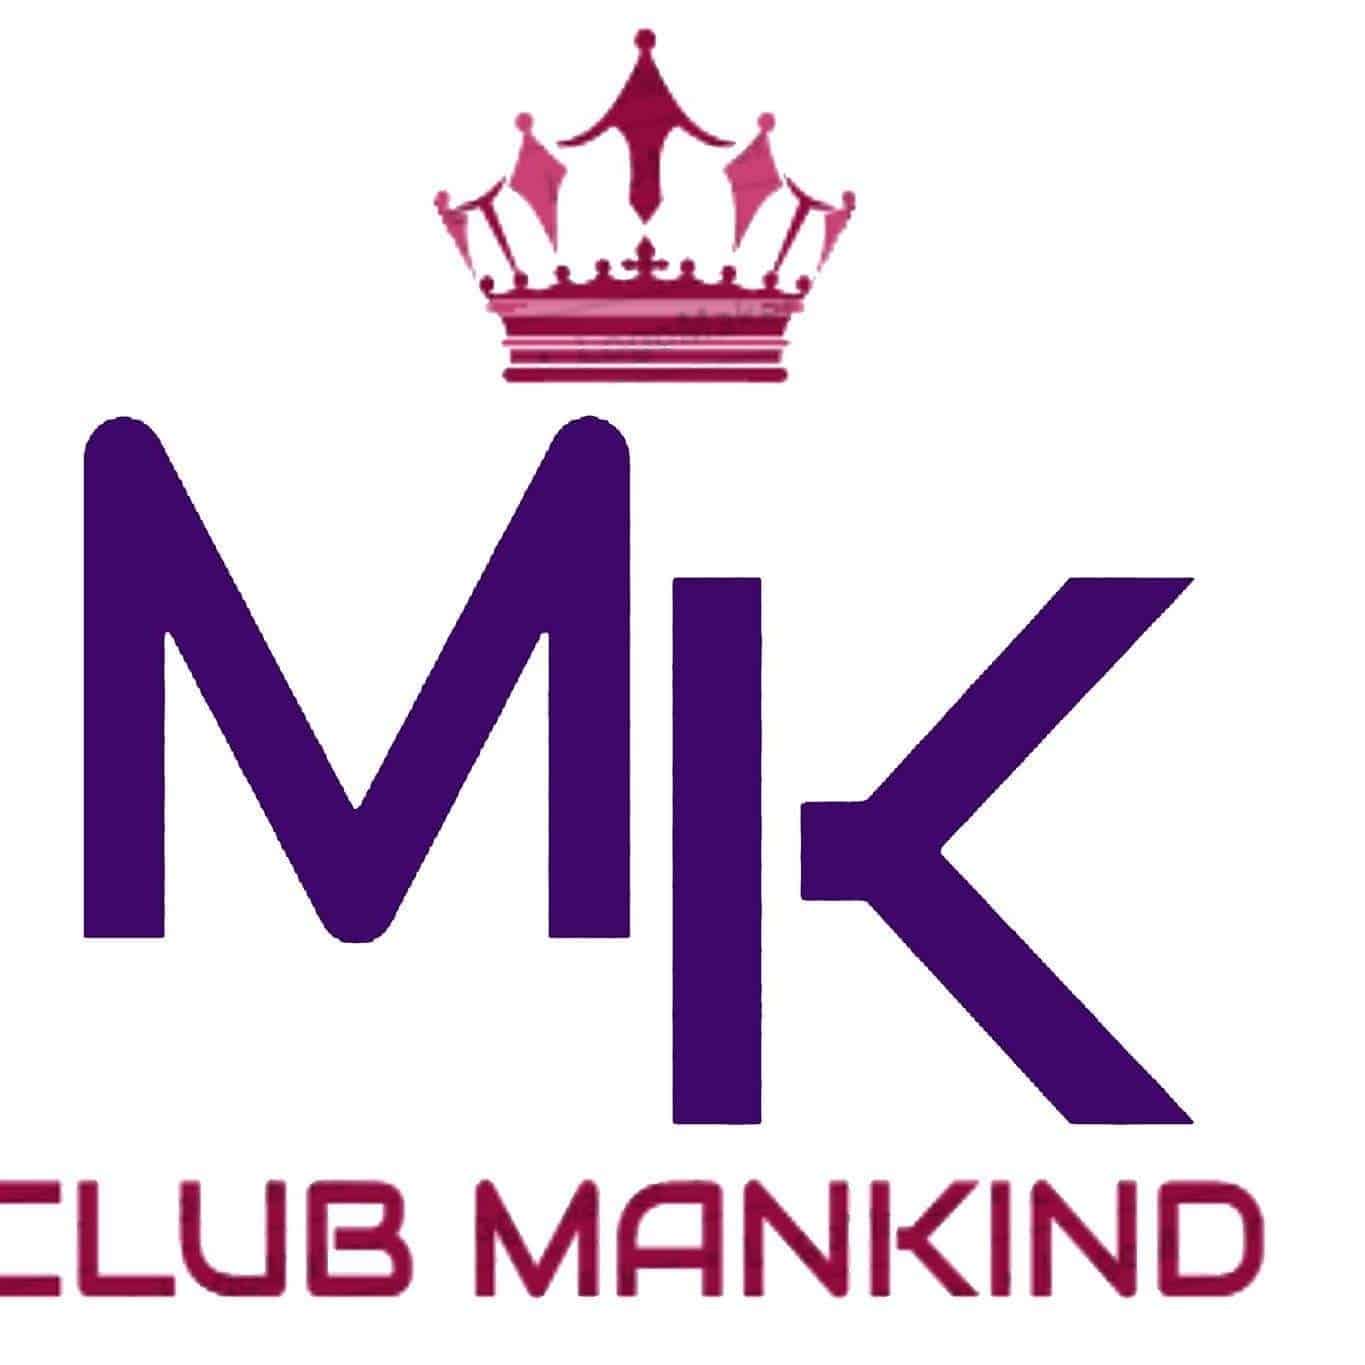 Club Mankind